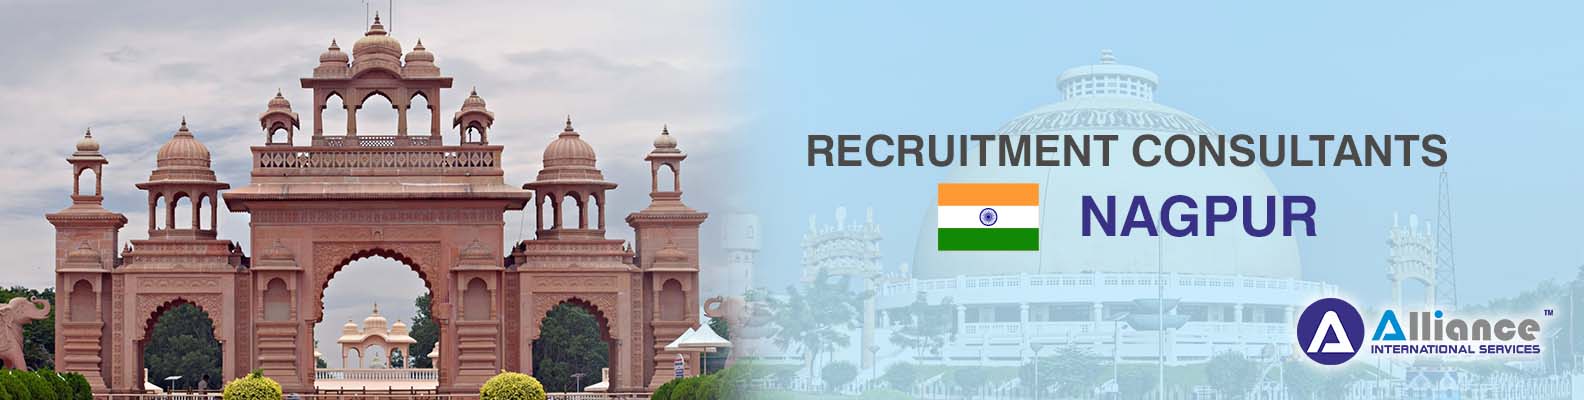 Recruitment Consultants Nagpur